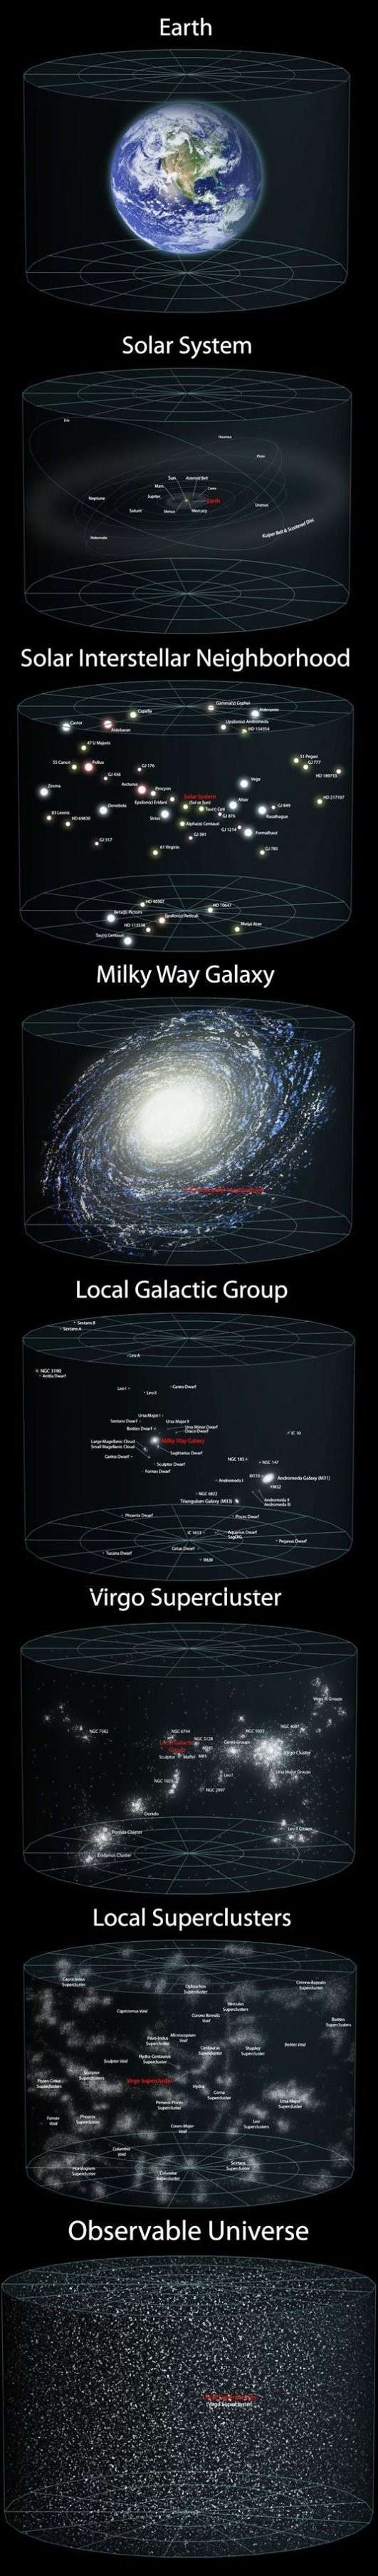 La inmensidad de nuestro Universo 3c210